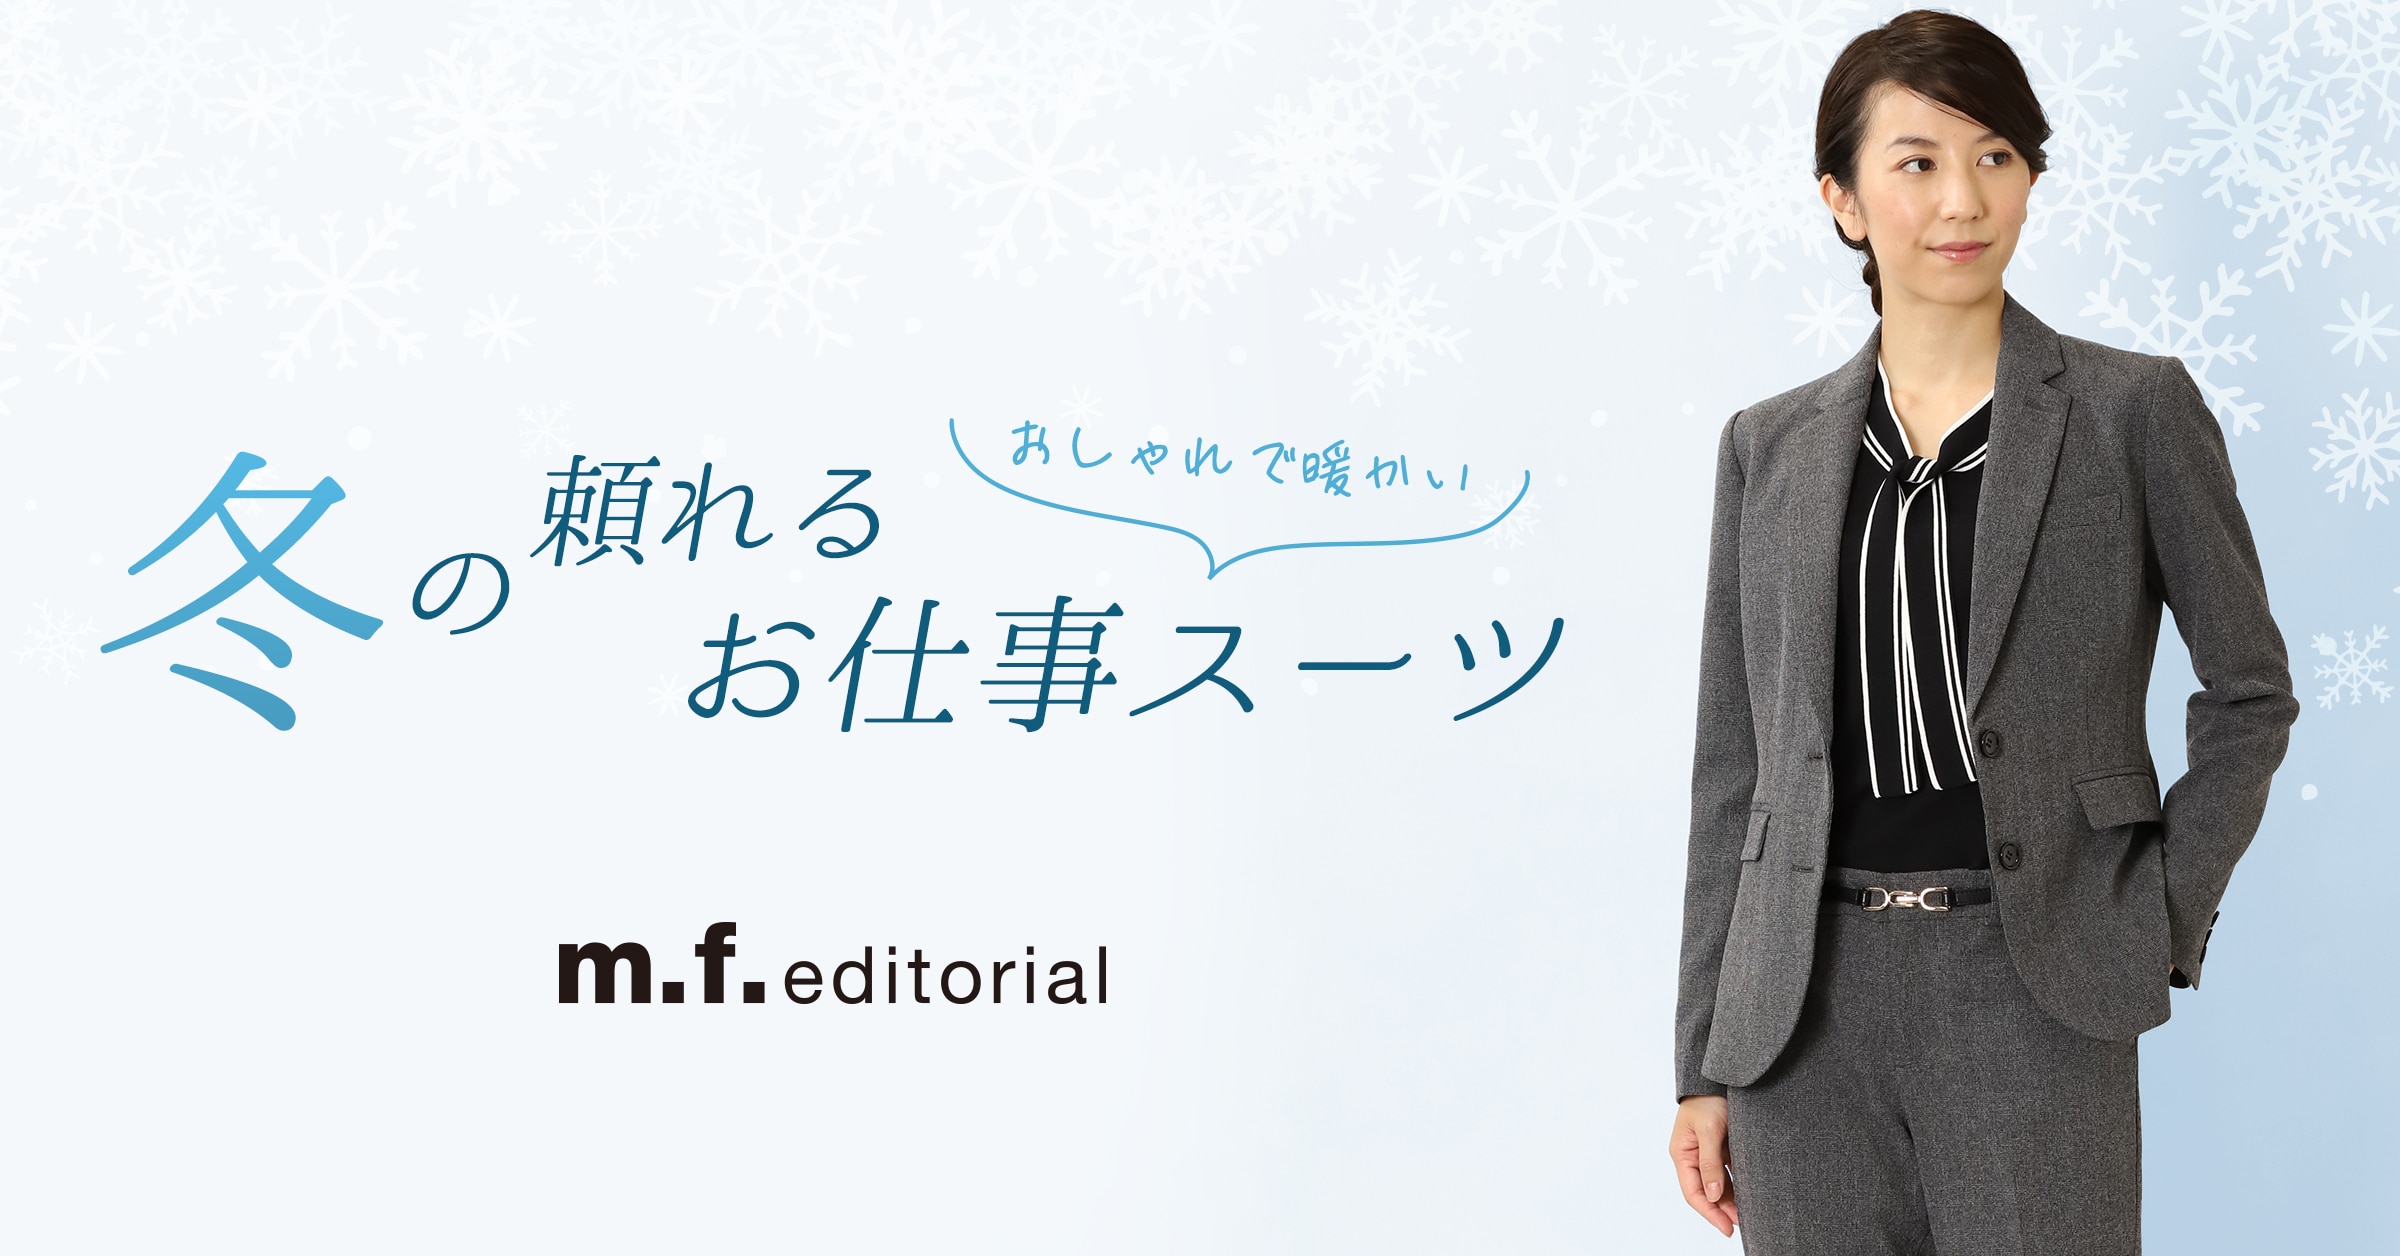 m.f.editorial(エム・エフ・エディトリアル) おしゃれで暖かい 冬の頼れるお仕事スーツ